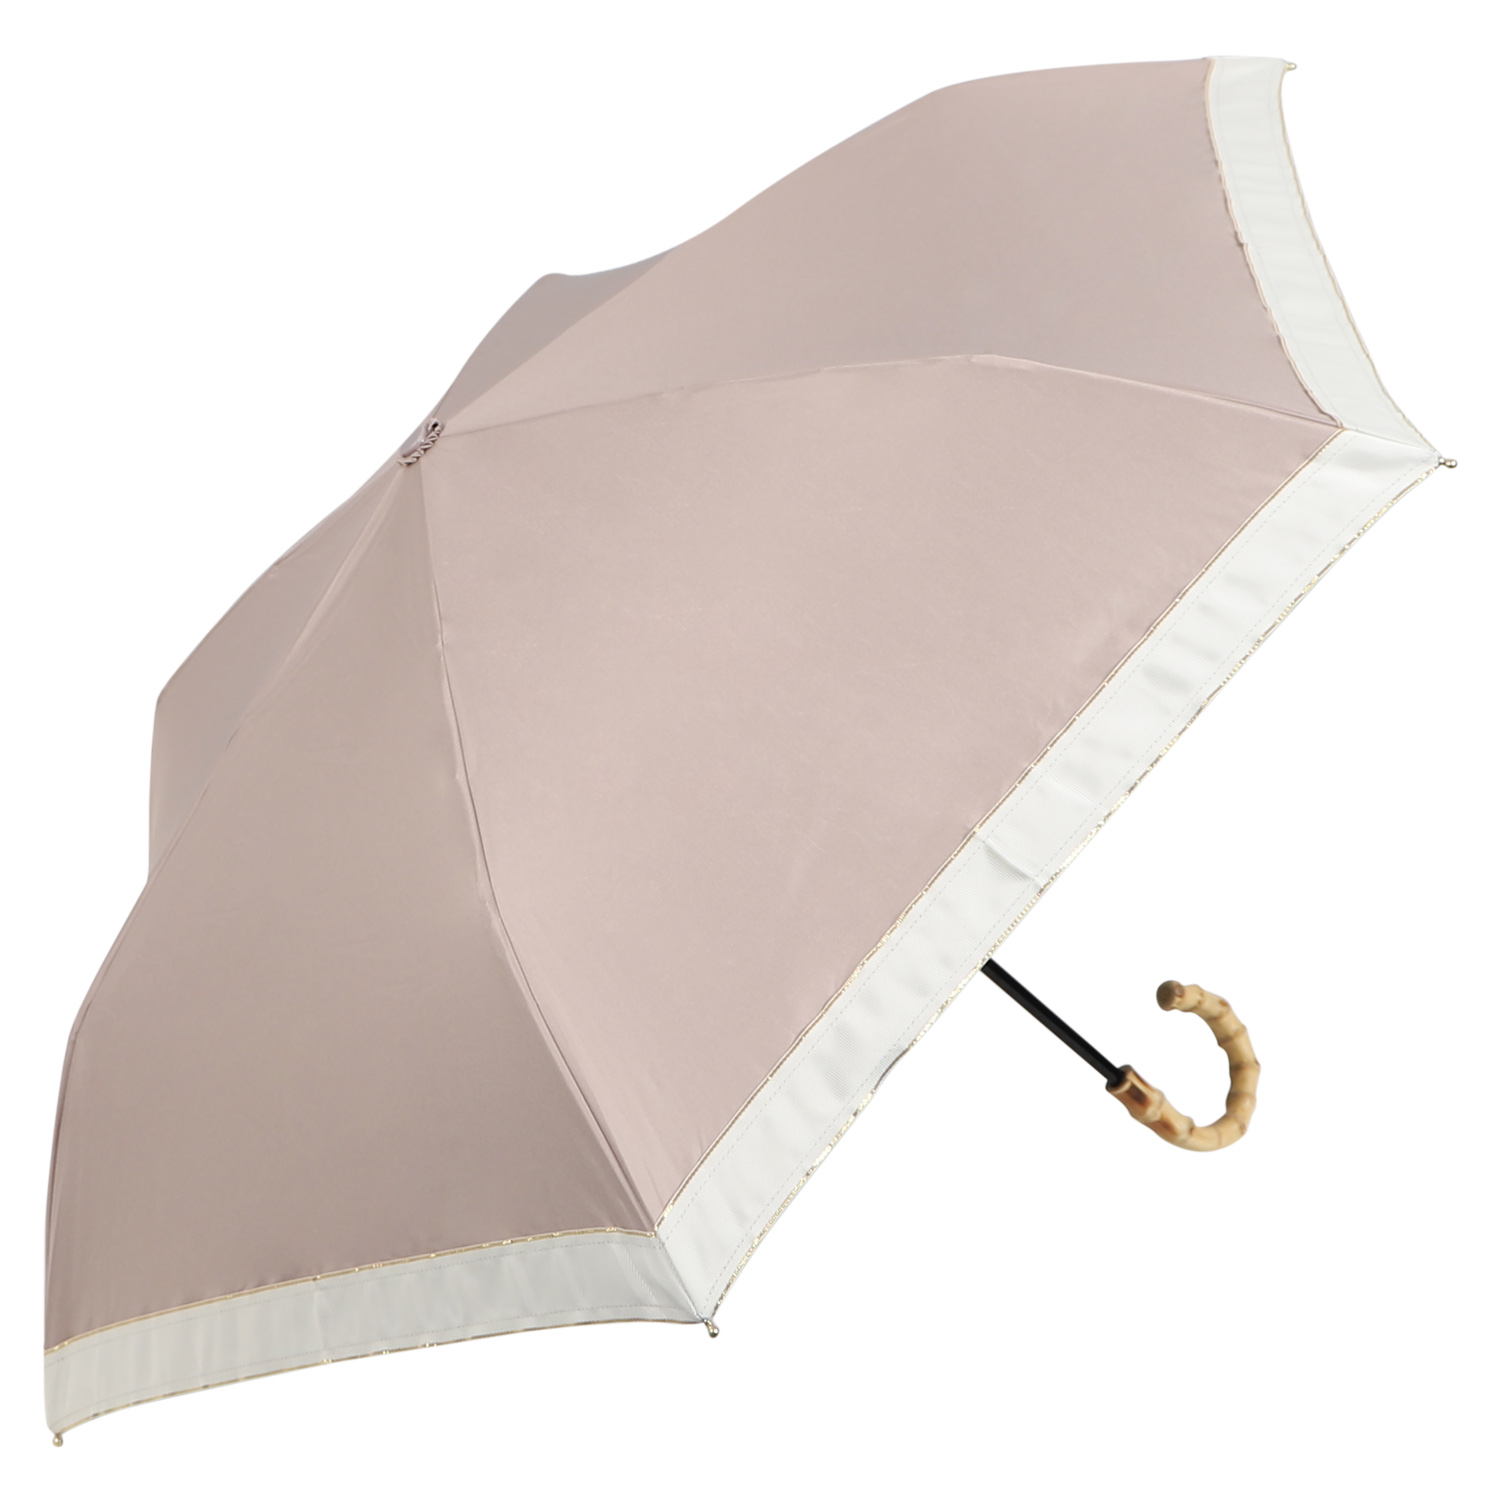 日傘 軽量 折りたたみ 完全遮光 晴雨兼用 遮光率100% UVカット 雨傘 折り畳み コンパクト ...